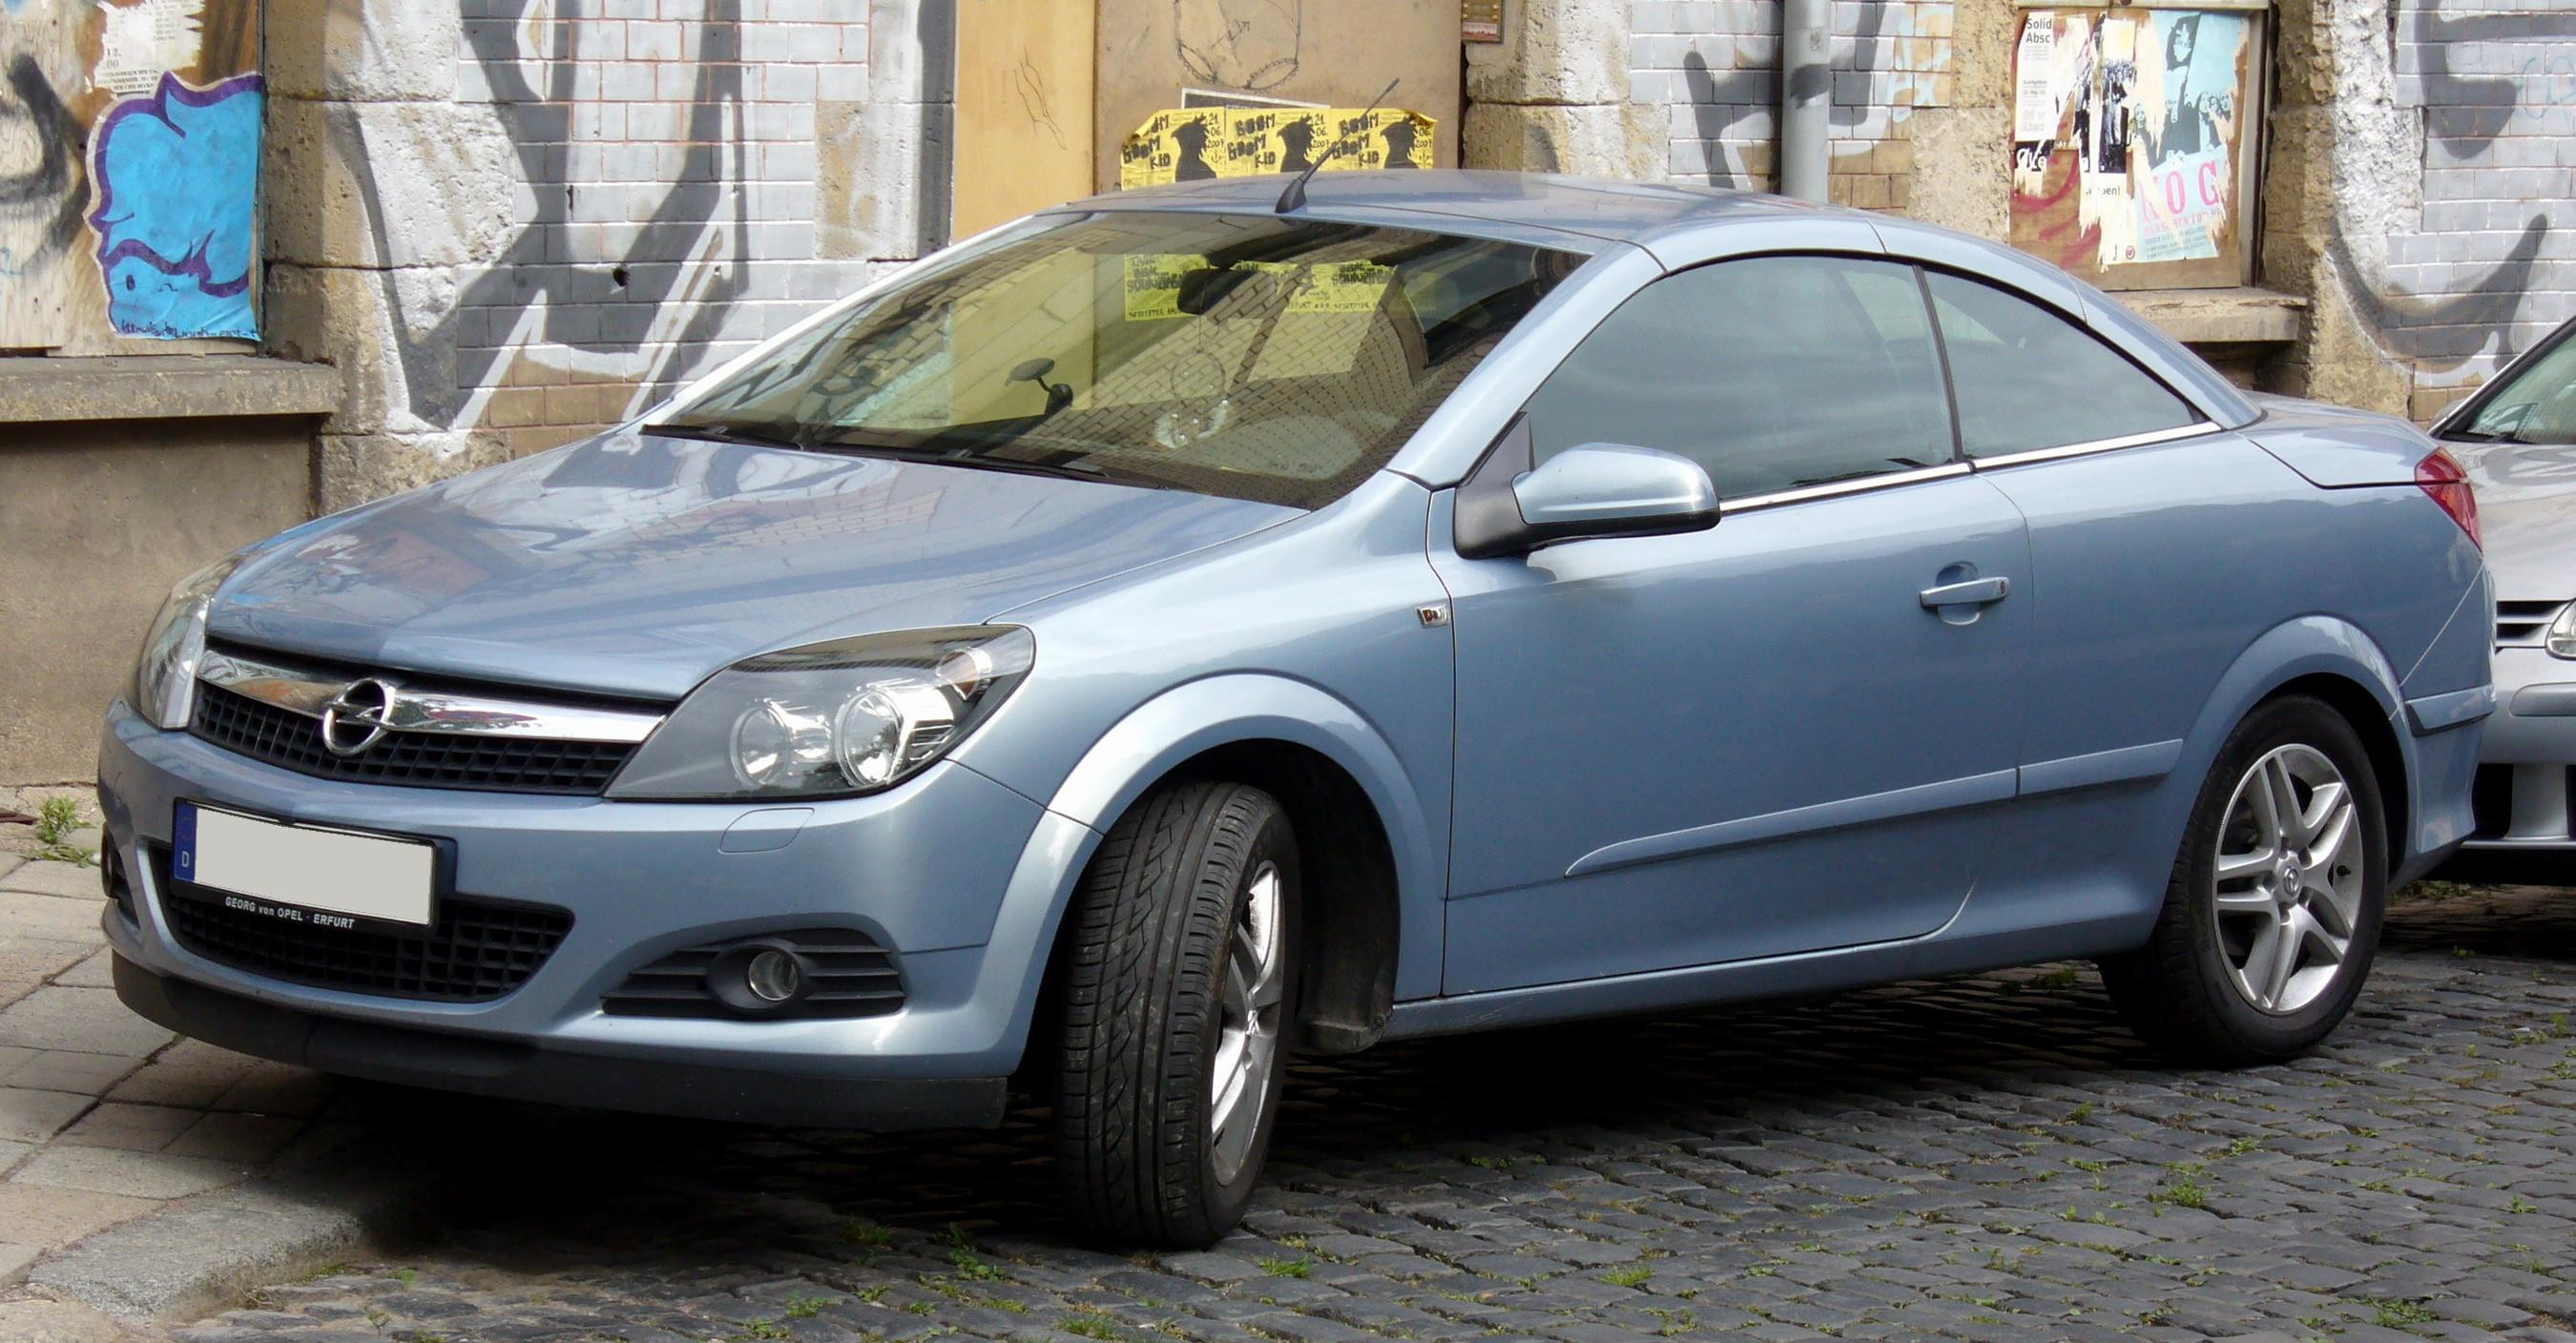 File:Opel Astra TwinTop.jpg - Wikimedia Commons